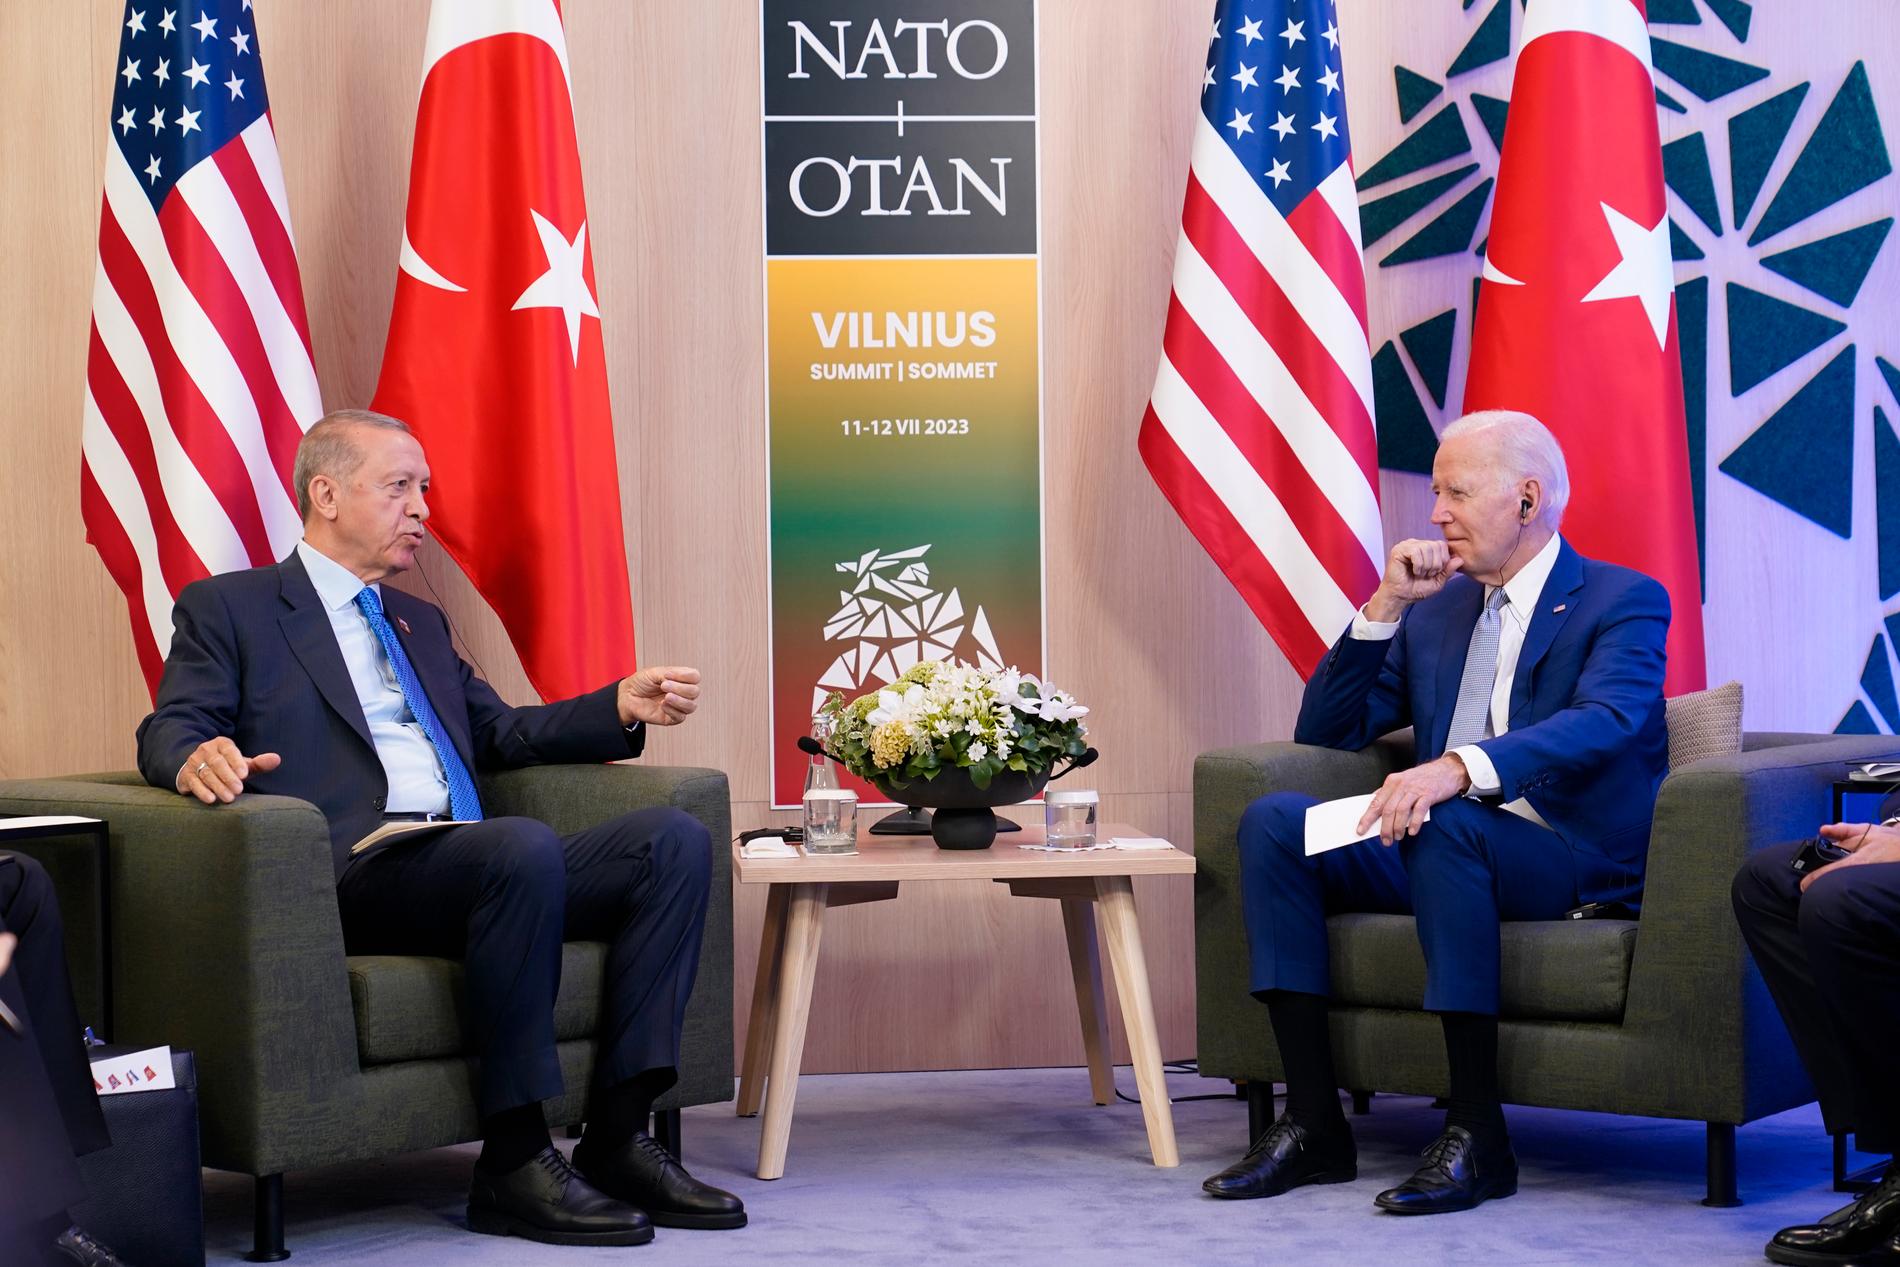 President Joe Biden och President Recep Tayyip Erdogan under Natomötet i Vilnius 2023